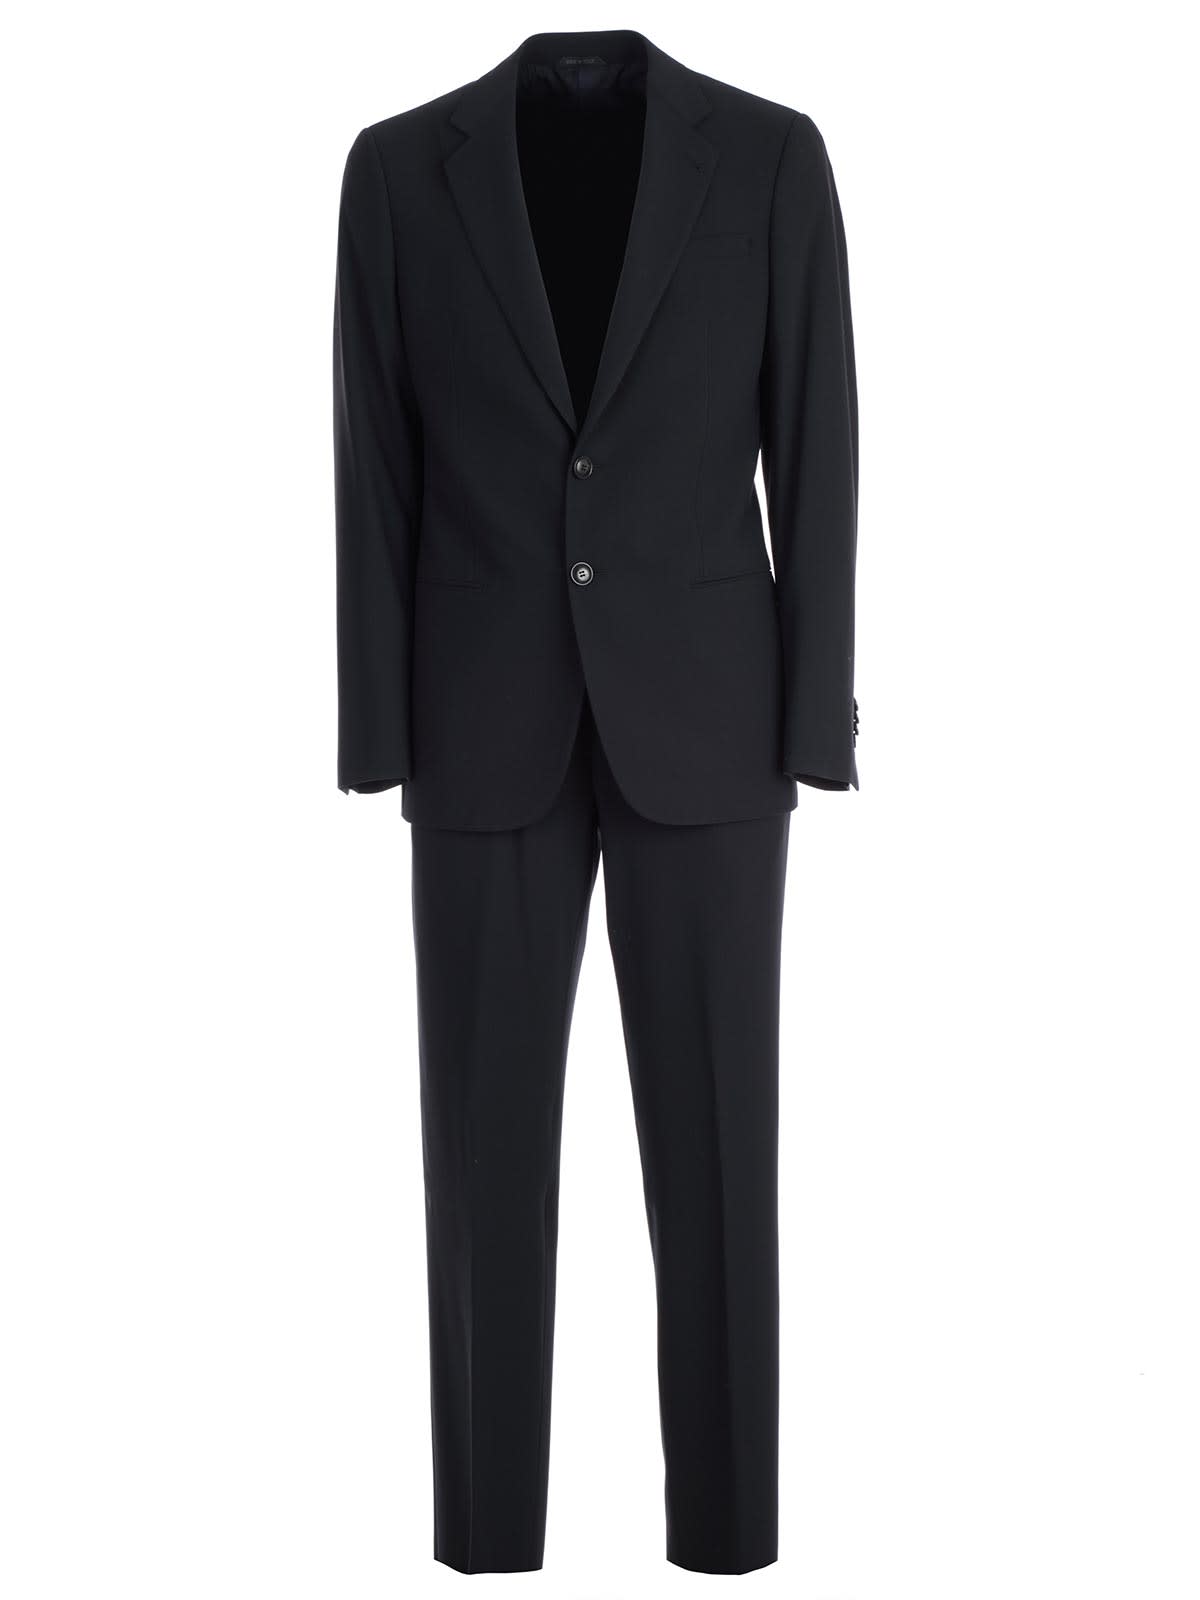 giorgio armani black suit